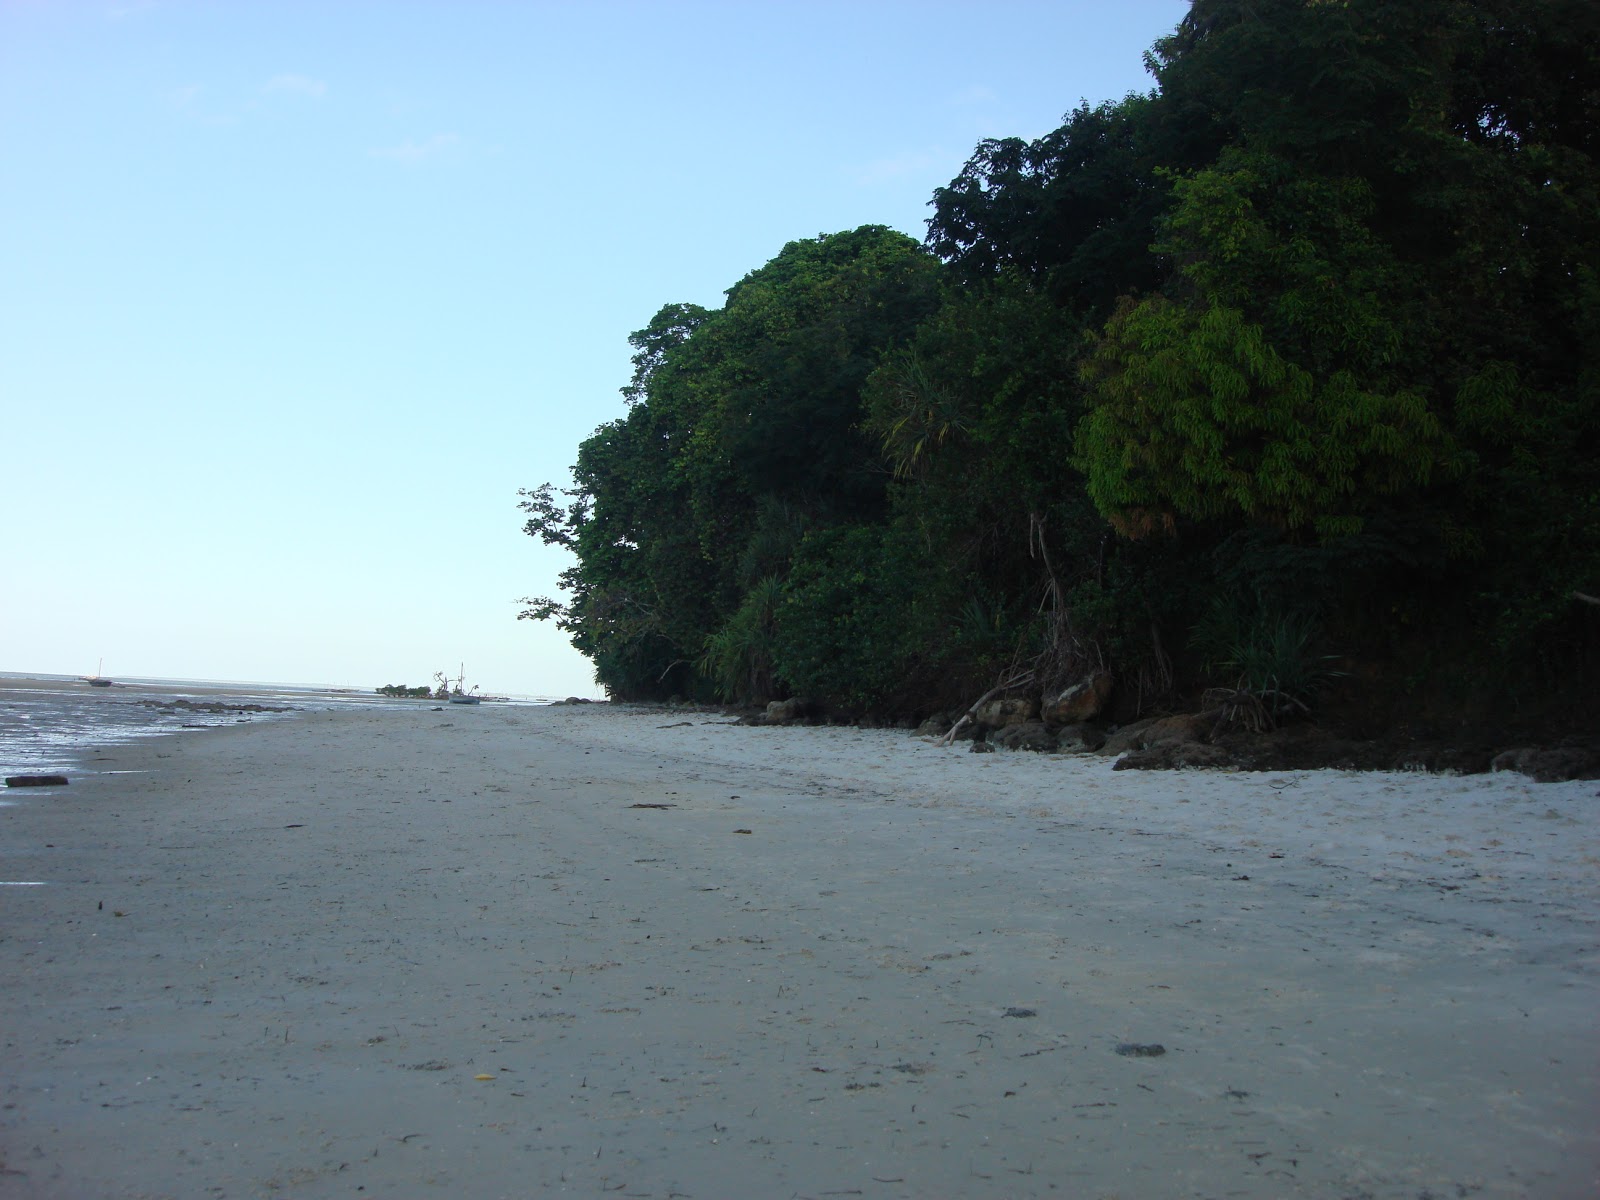 Zdjęcie Msuka Beach z powierzchnią jasny piasek